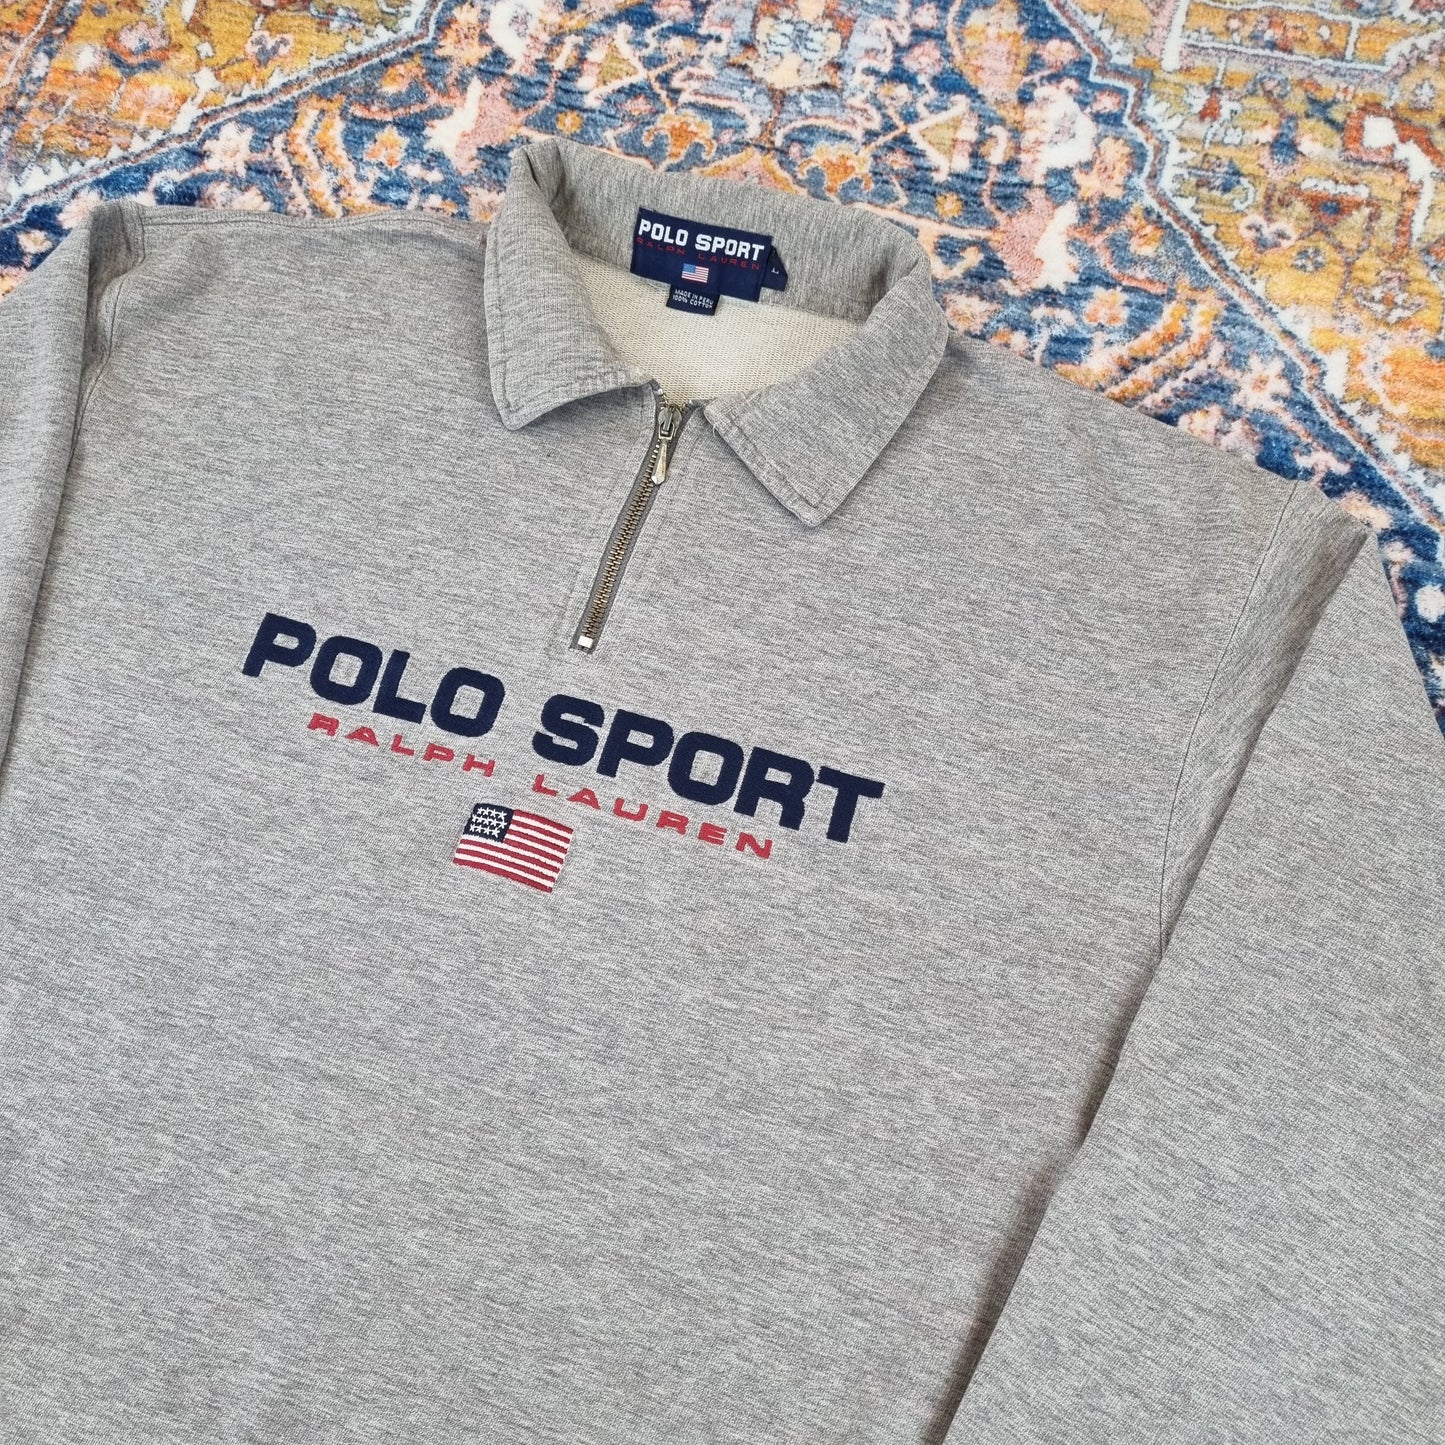 Polo Sport Ralph Lauren Sweatshirt (L)